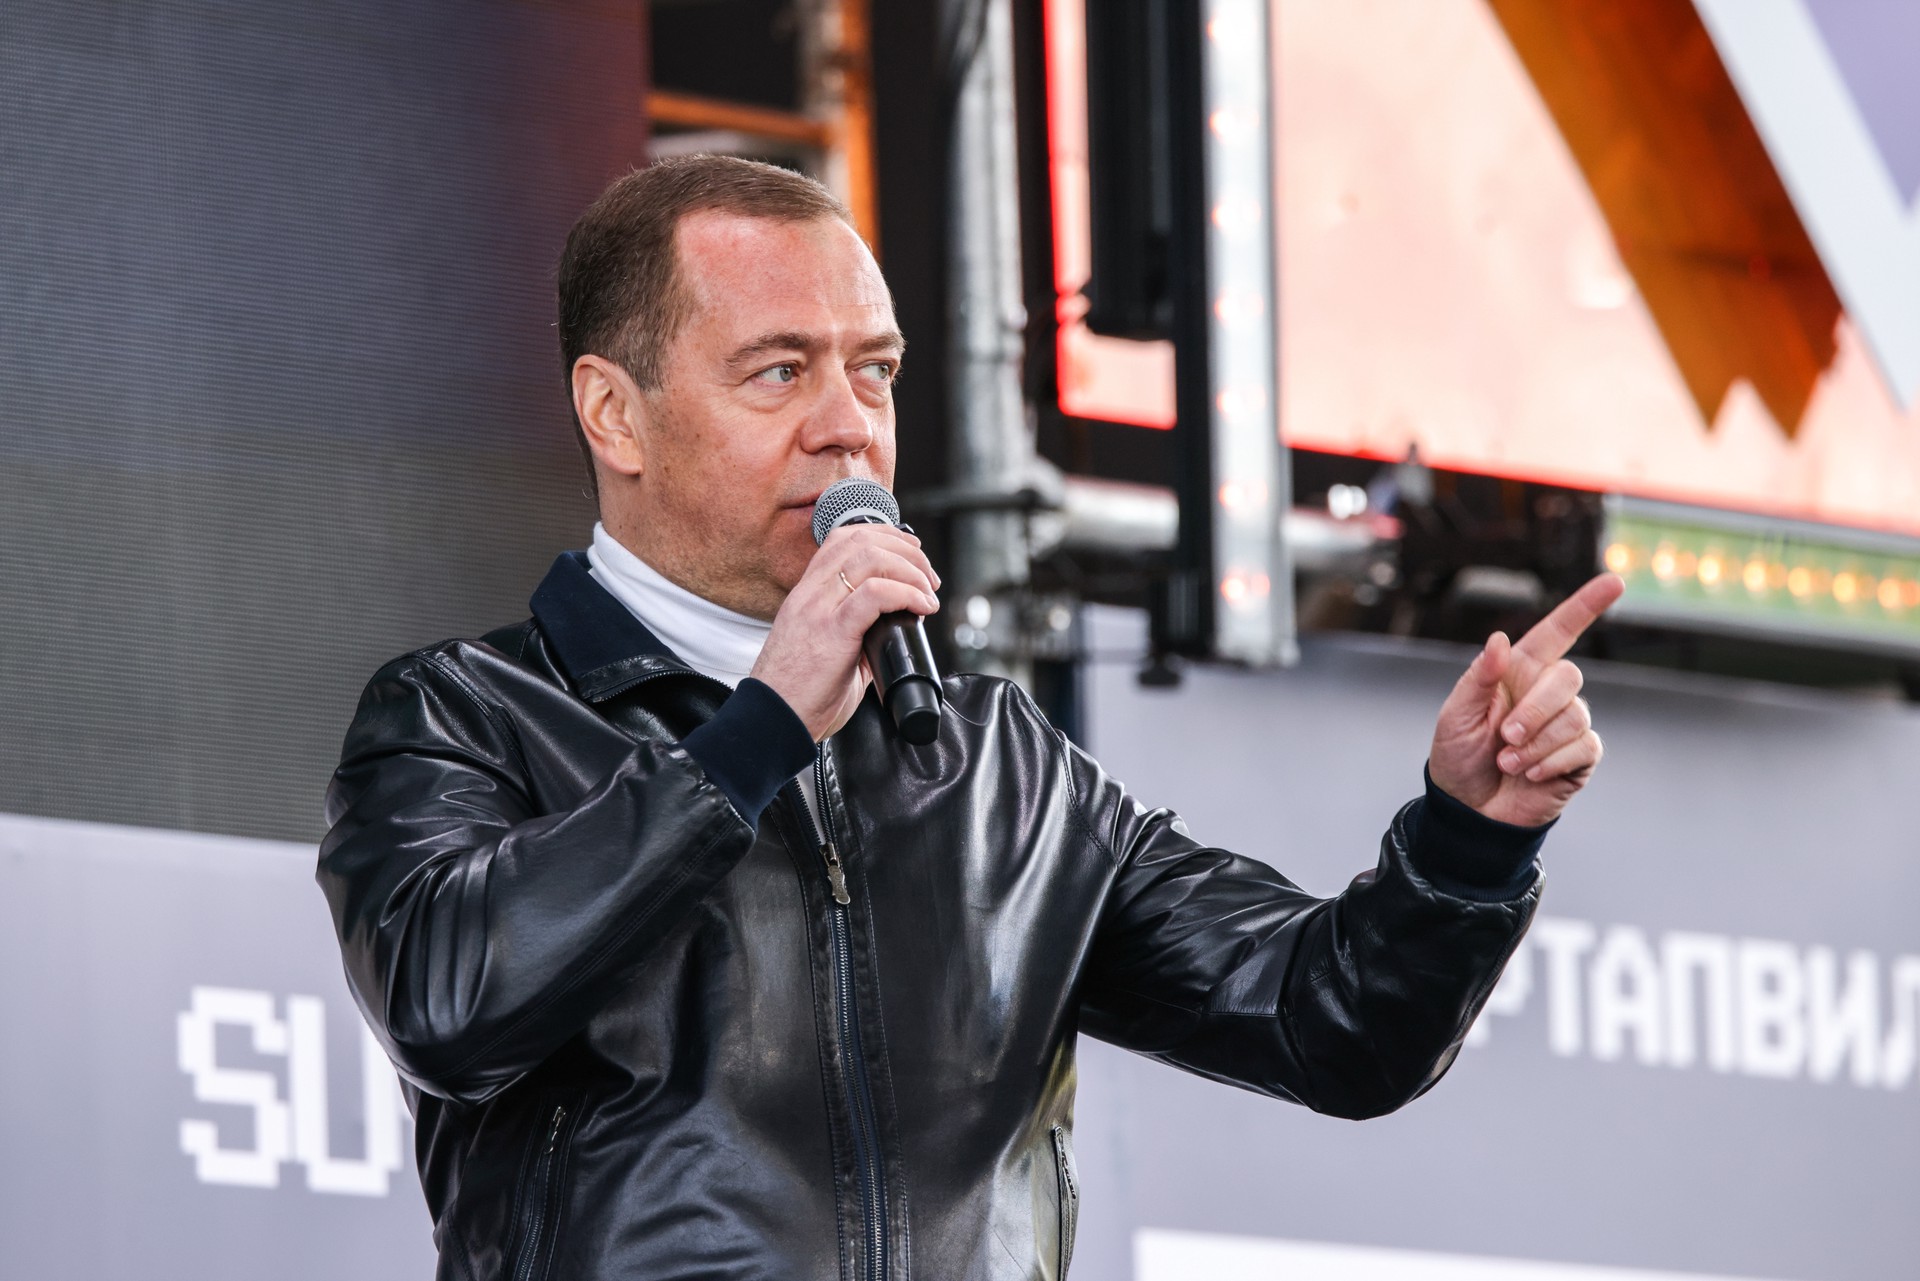 Бывший романтик: почему Дмитрий Медведев пишет самые резкие посты